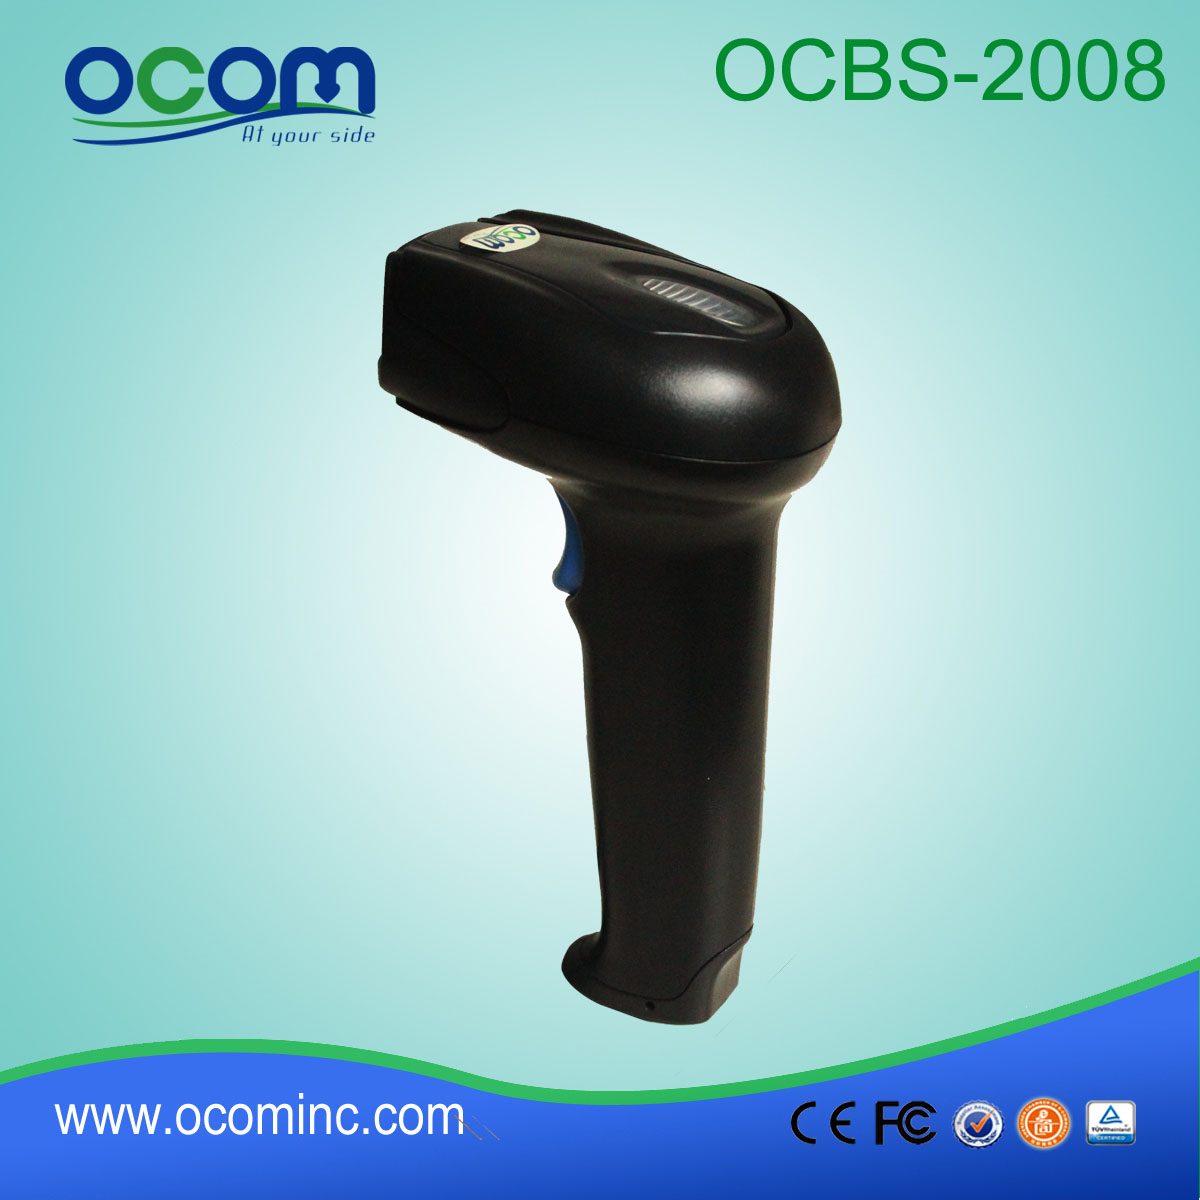 OCBs del 2008 Supermercato 2D QR Code Handheld Barcode Scanner